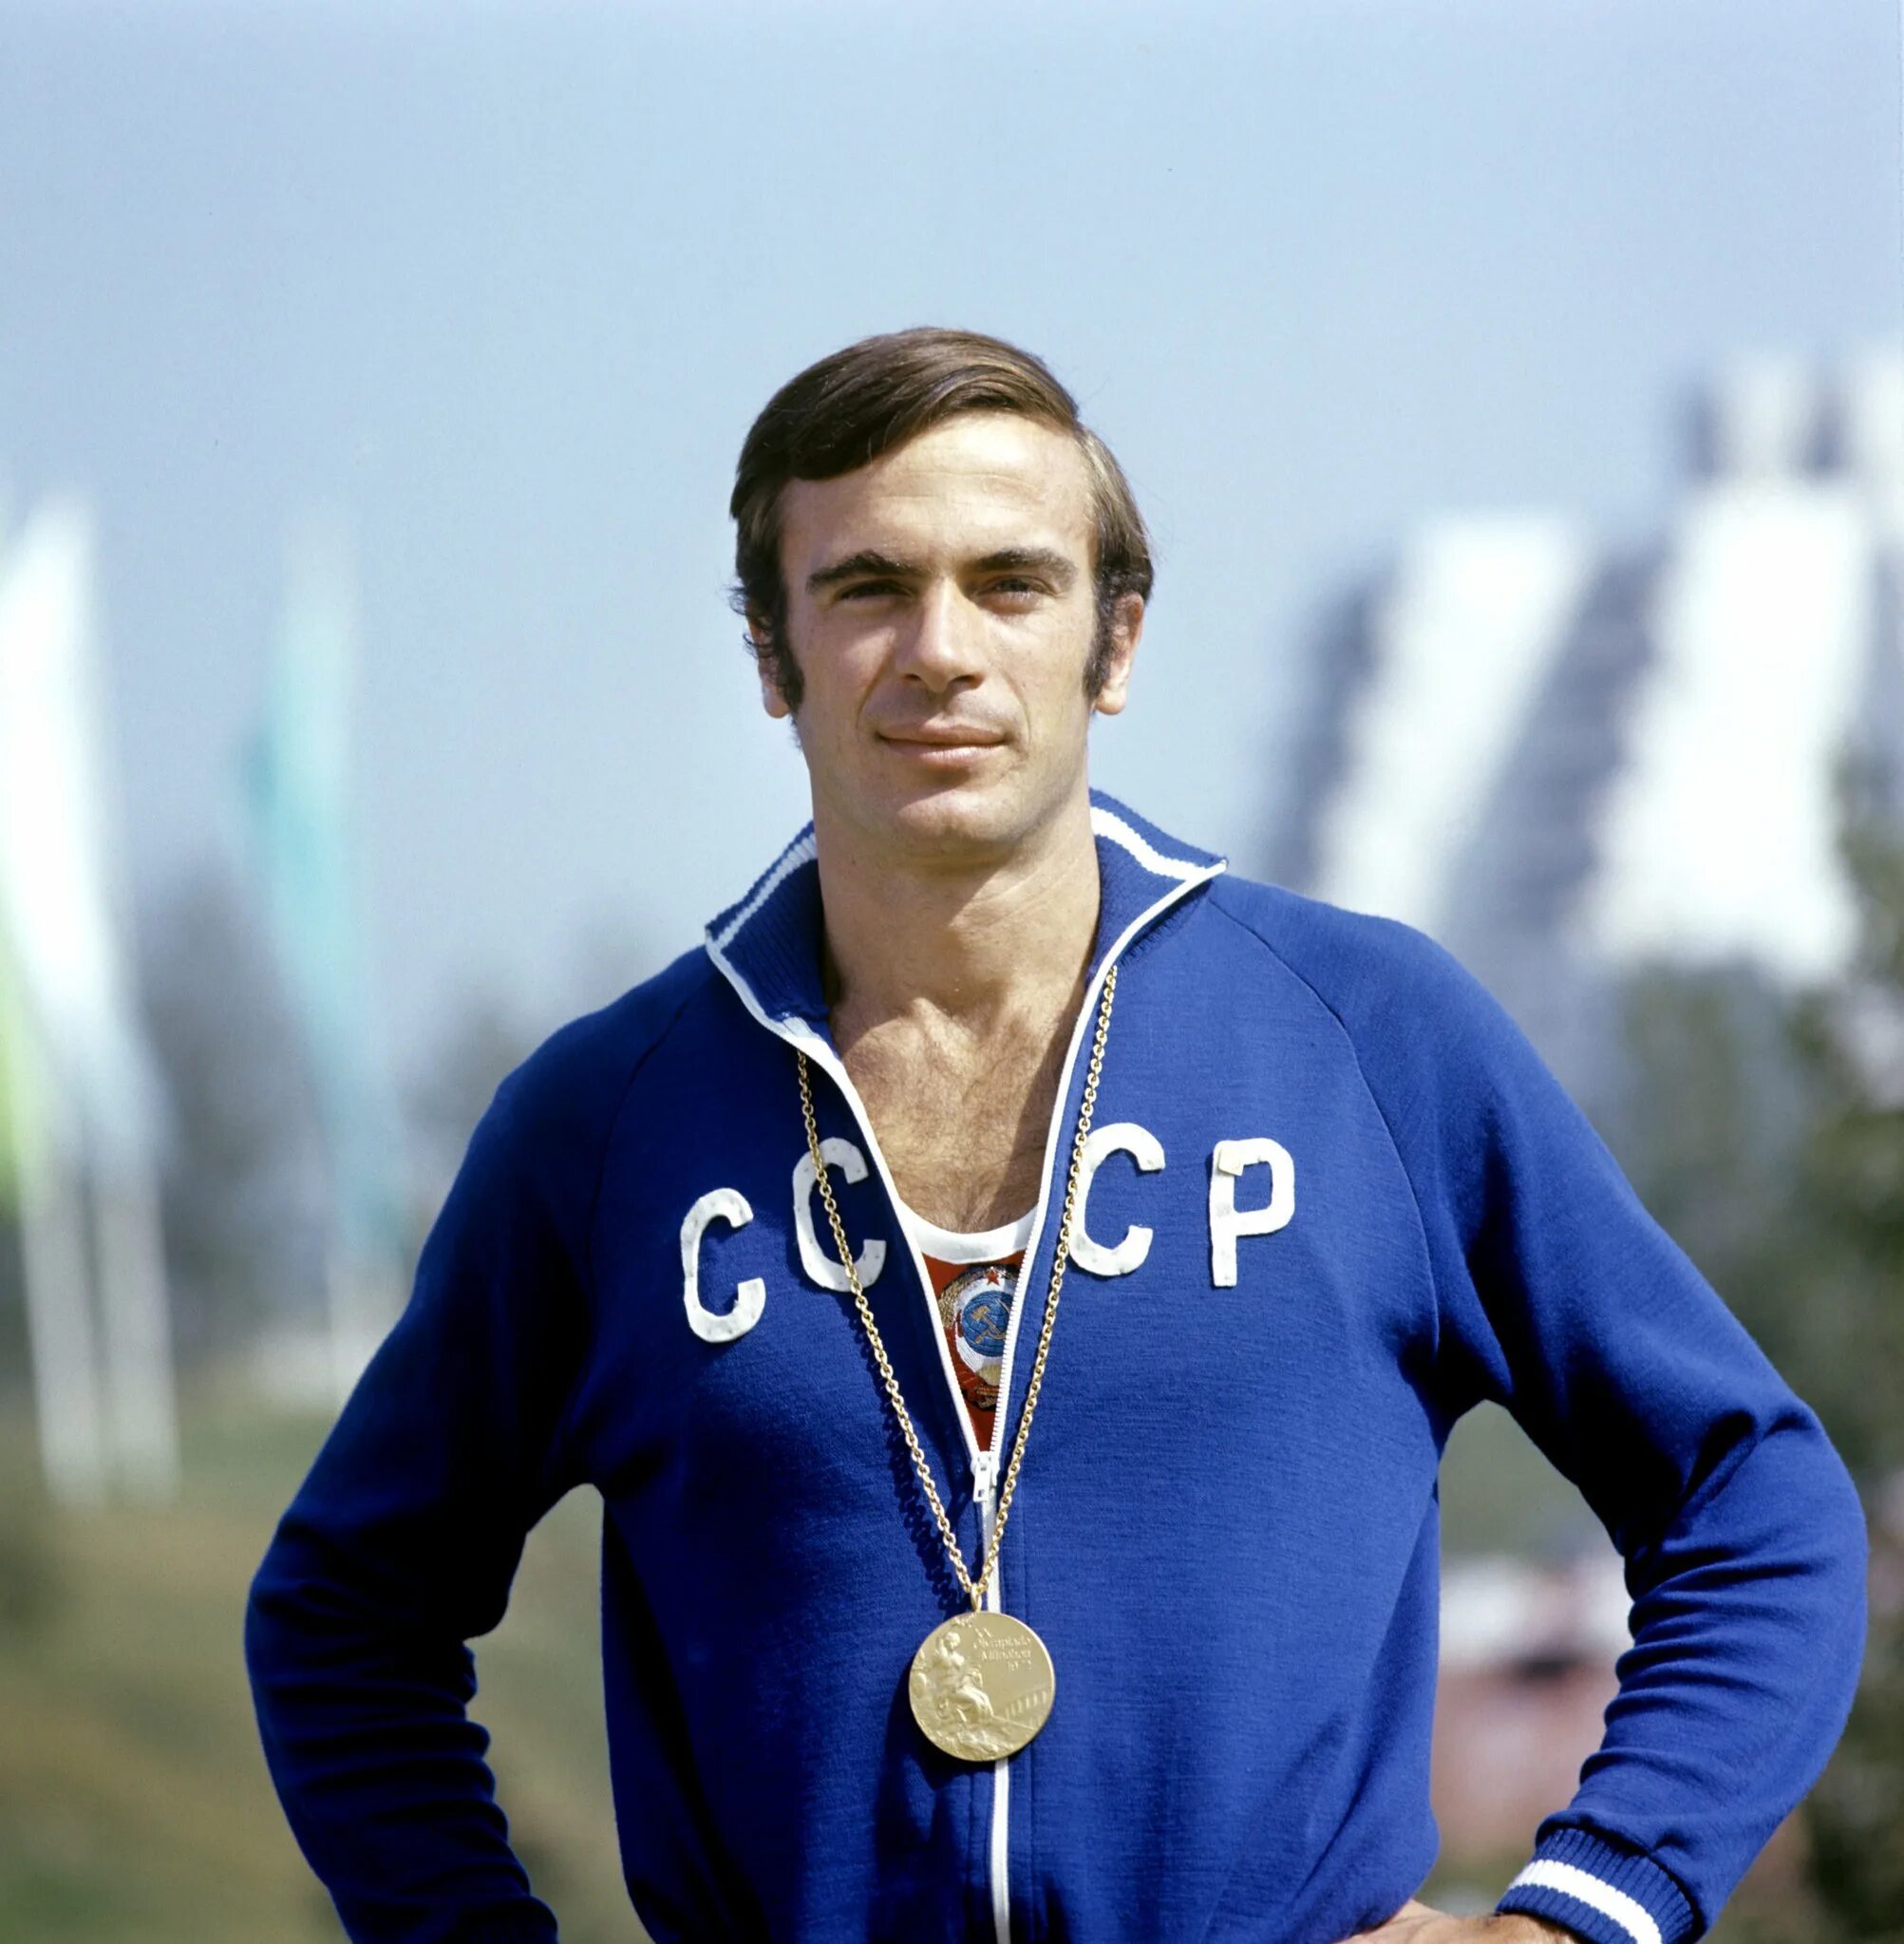 Первые советские спортсмены